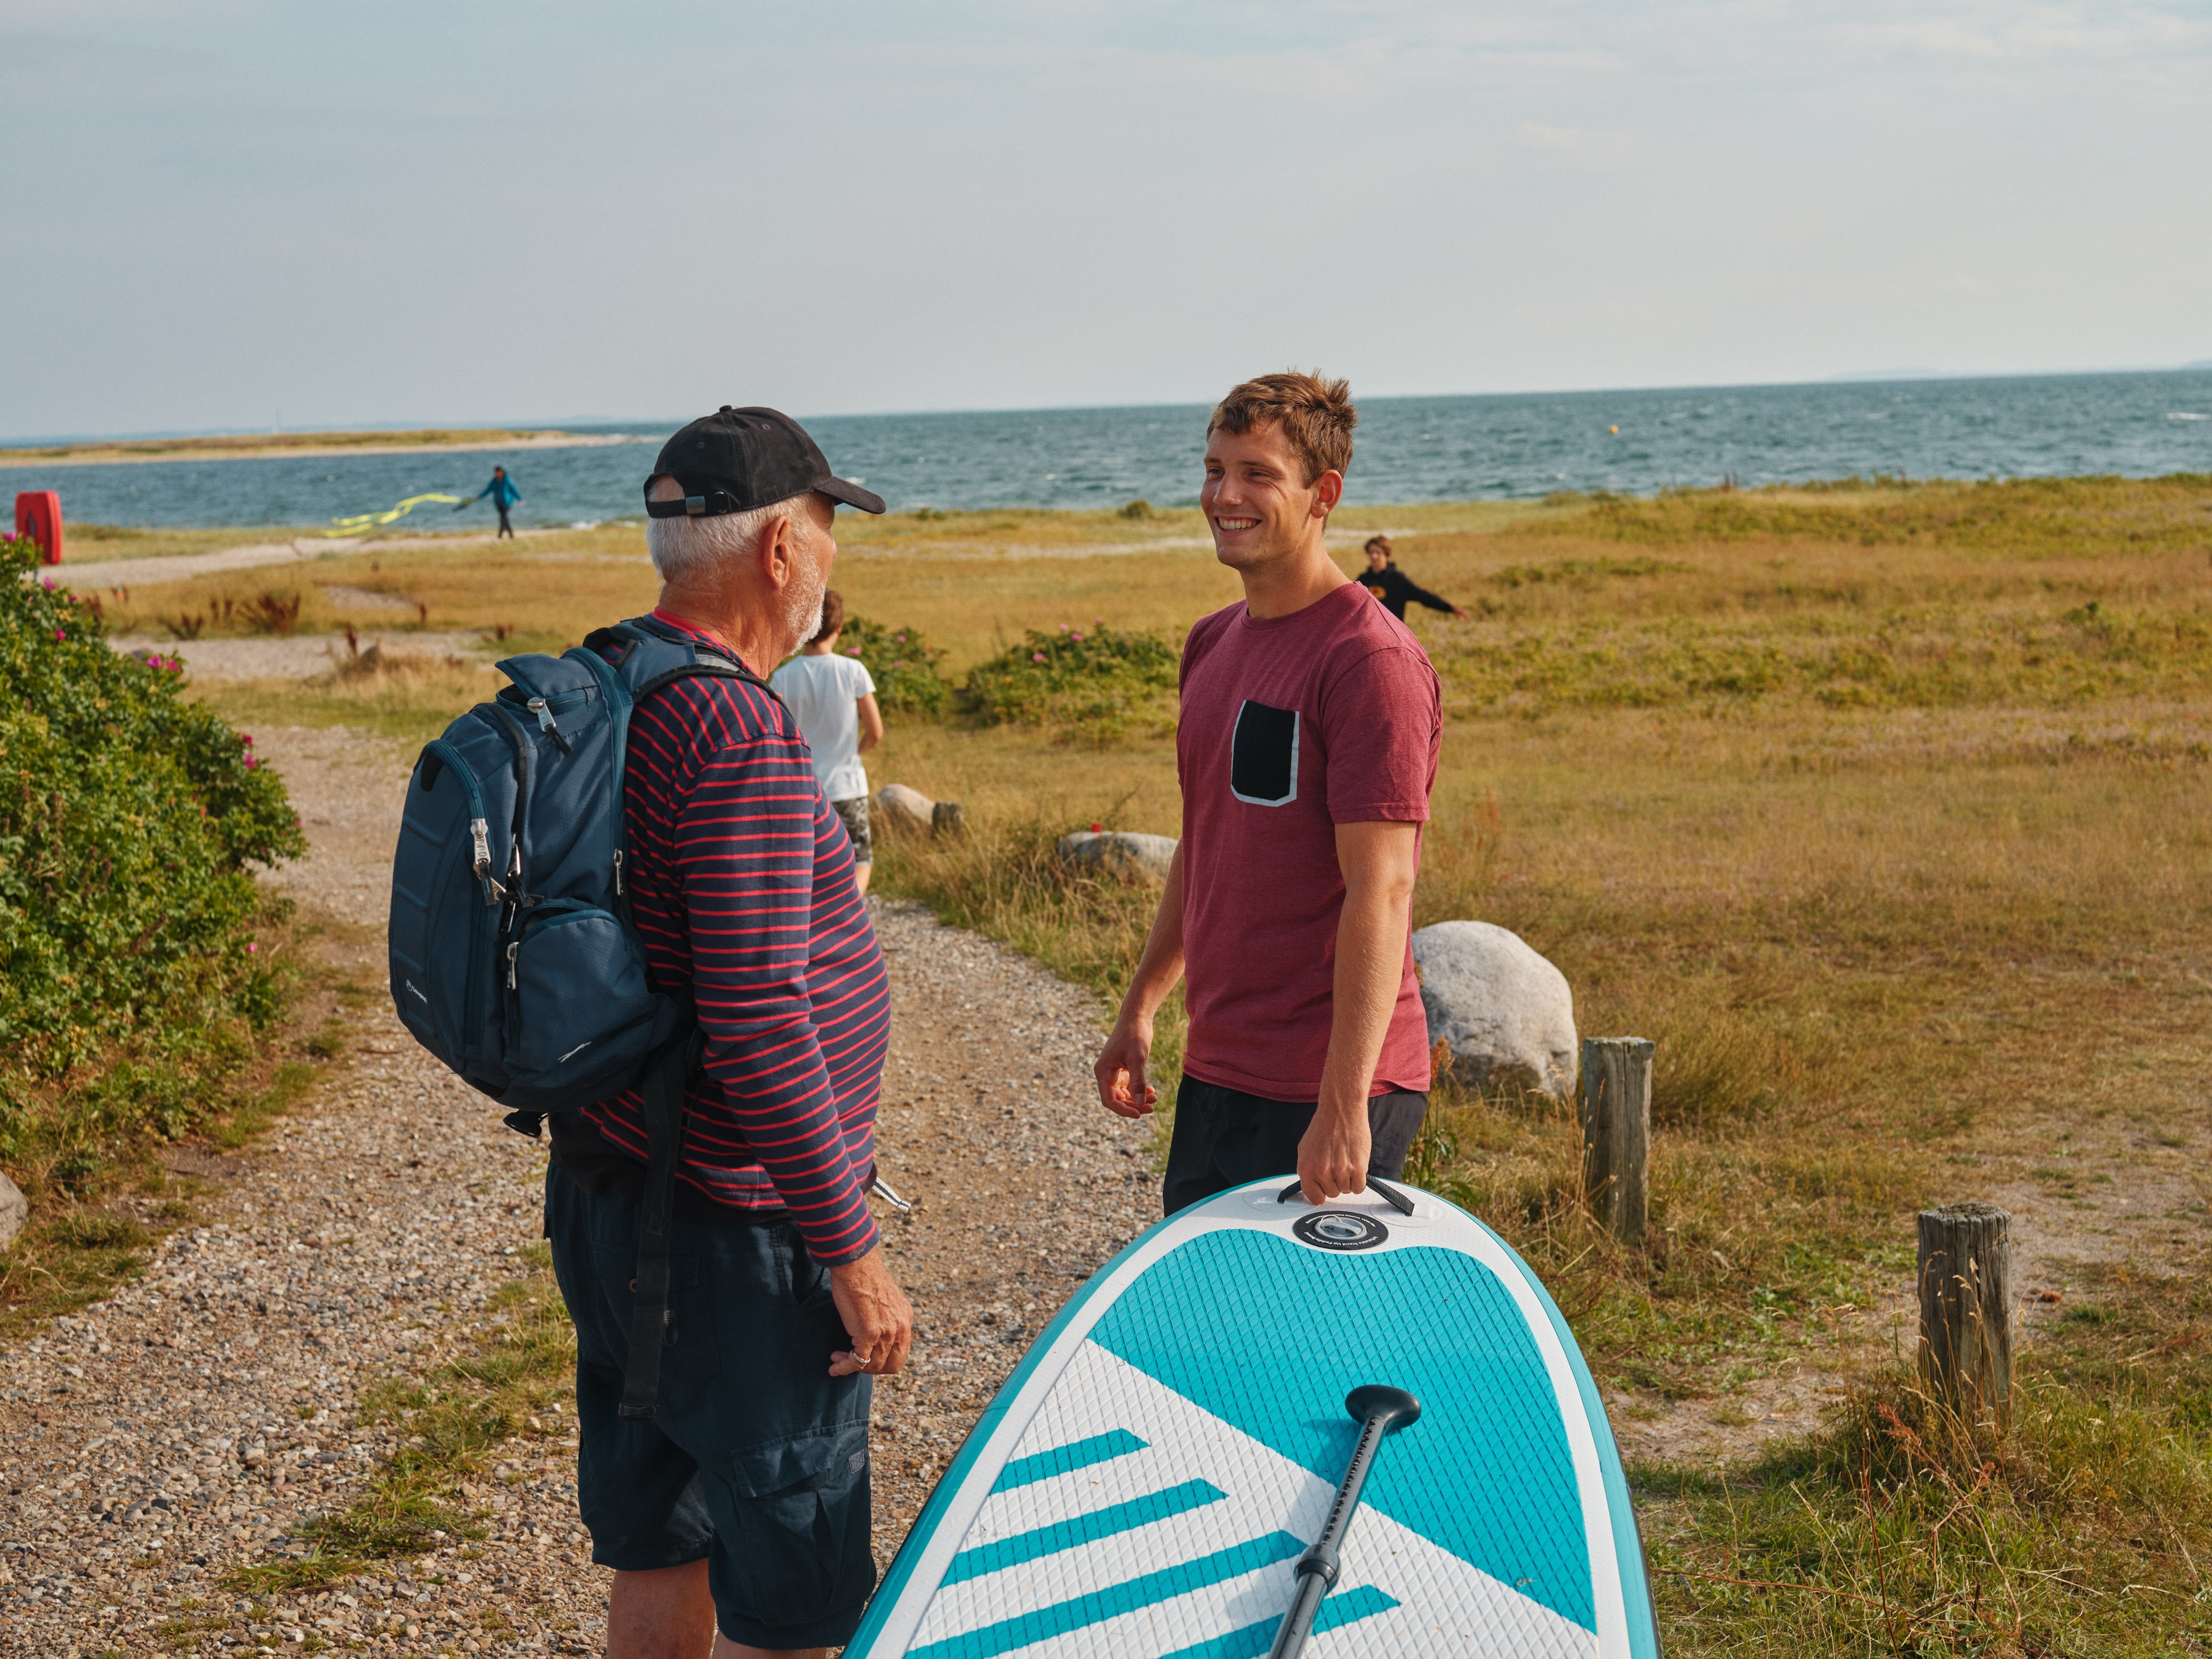 Pensioneret bedstefar og barnebarn med surfbræt og rygsæk ved strand